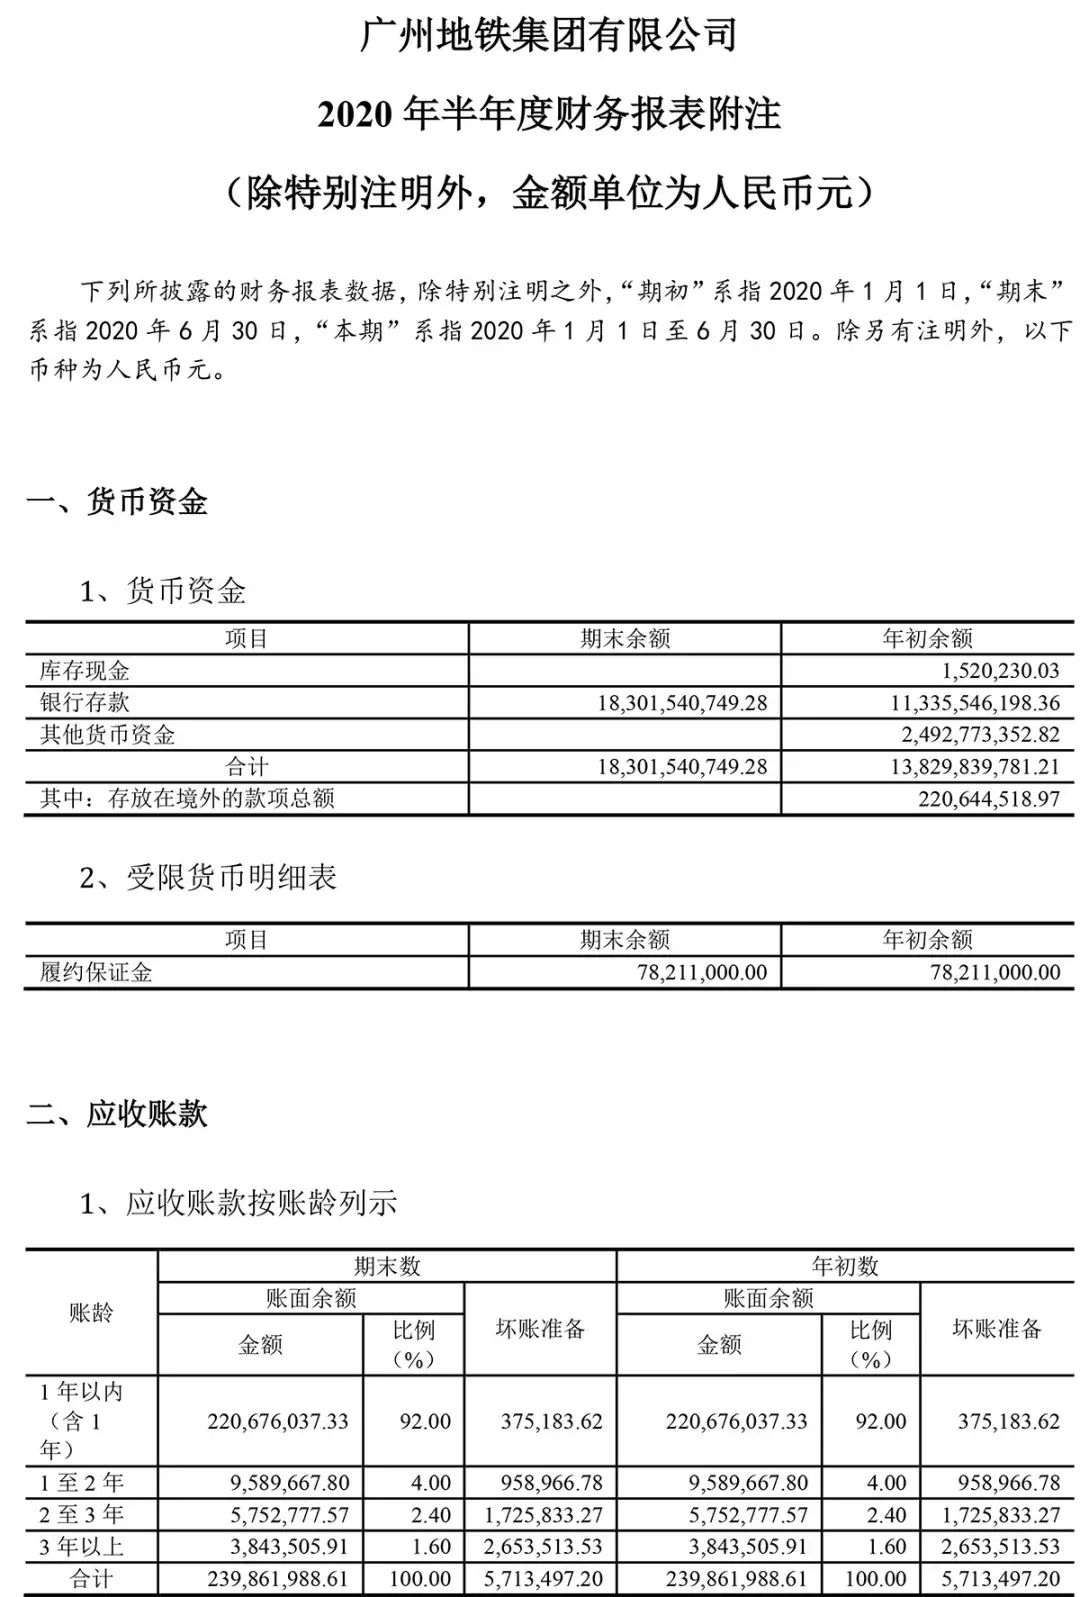 (广州地铁集团有限公司)广州地铁集团有限公司2020年半年度财务报表  第9张